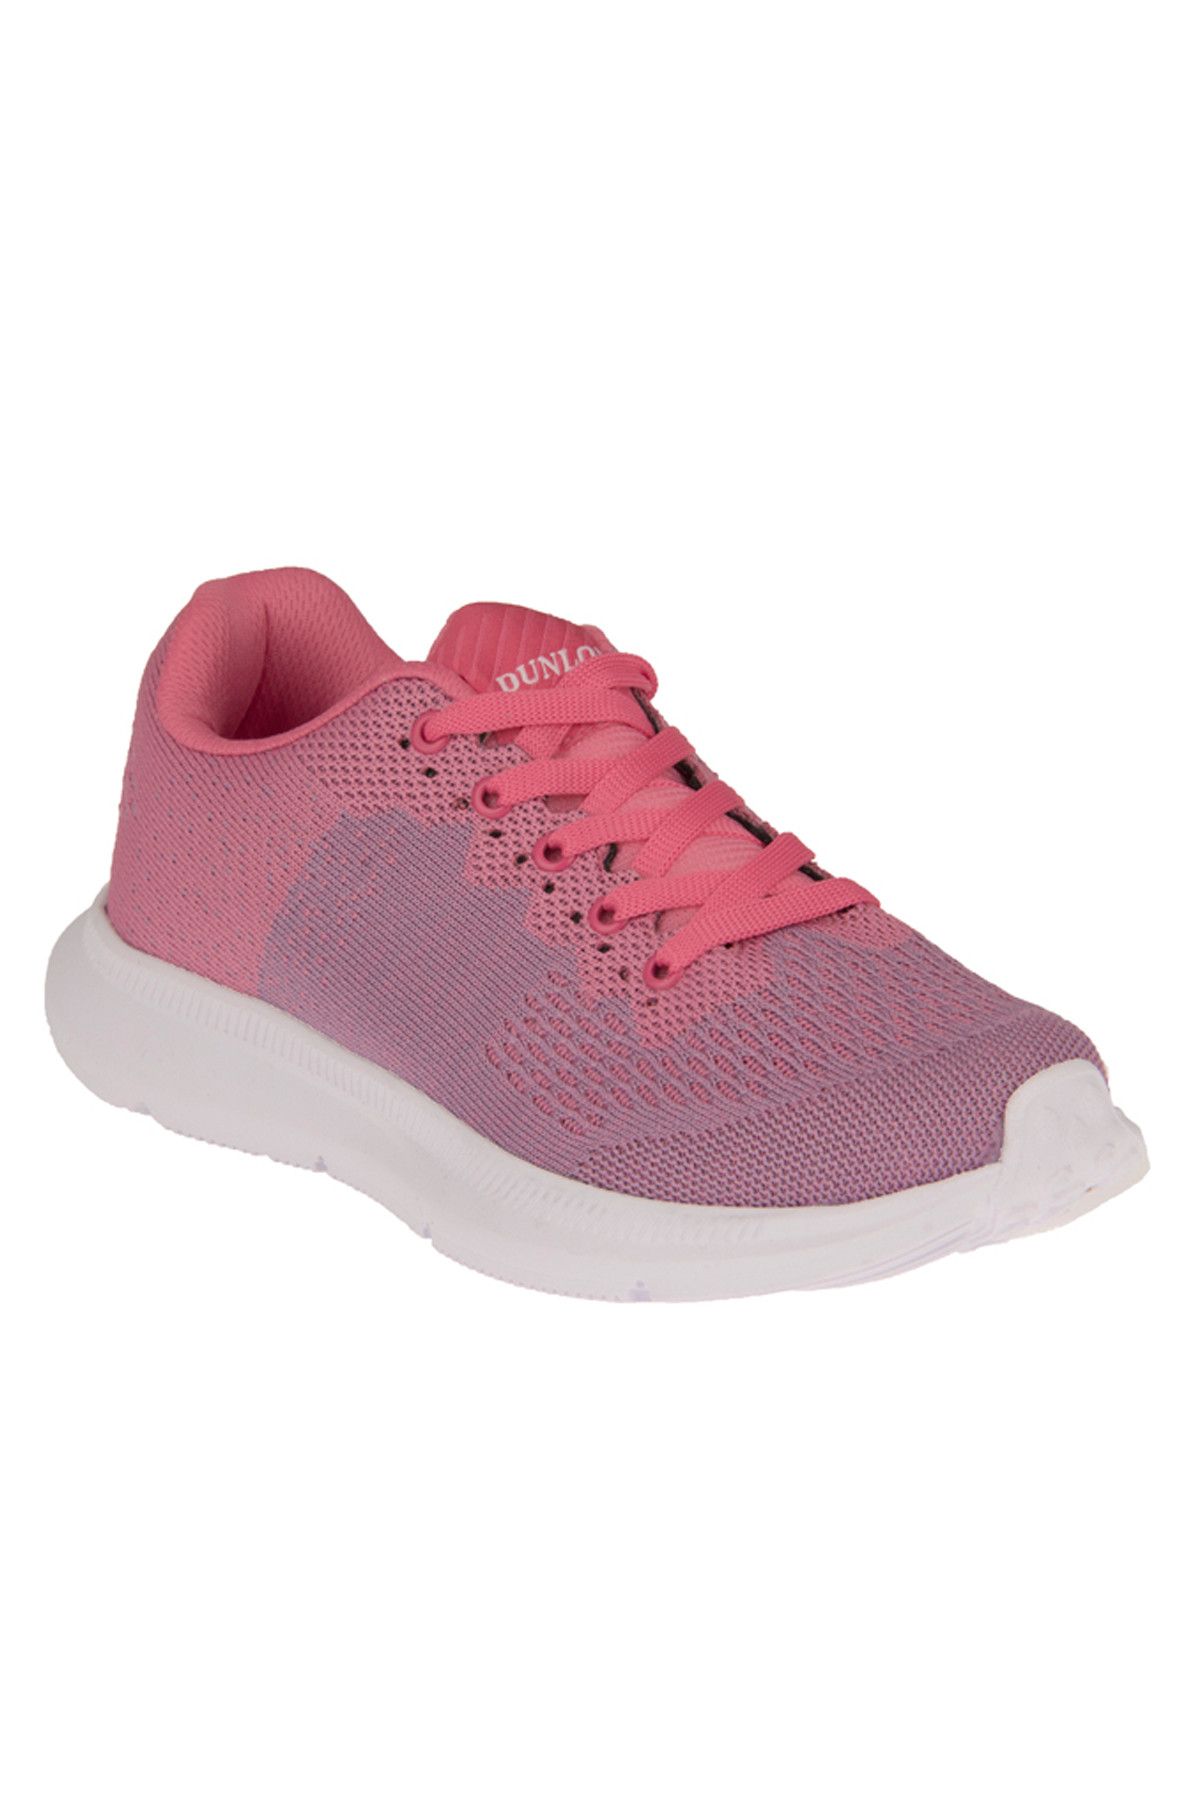 Dunlop Pembe Lila Kadın Sneaker 8320 109106G